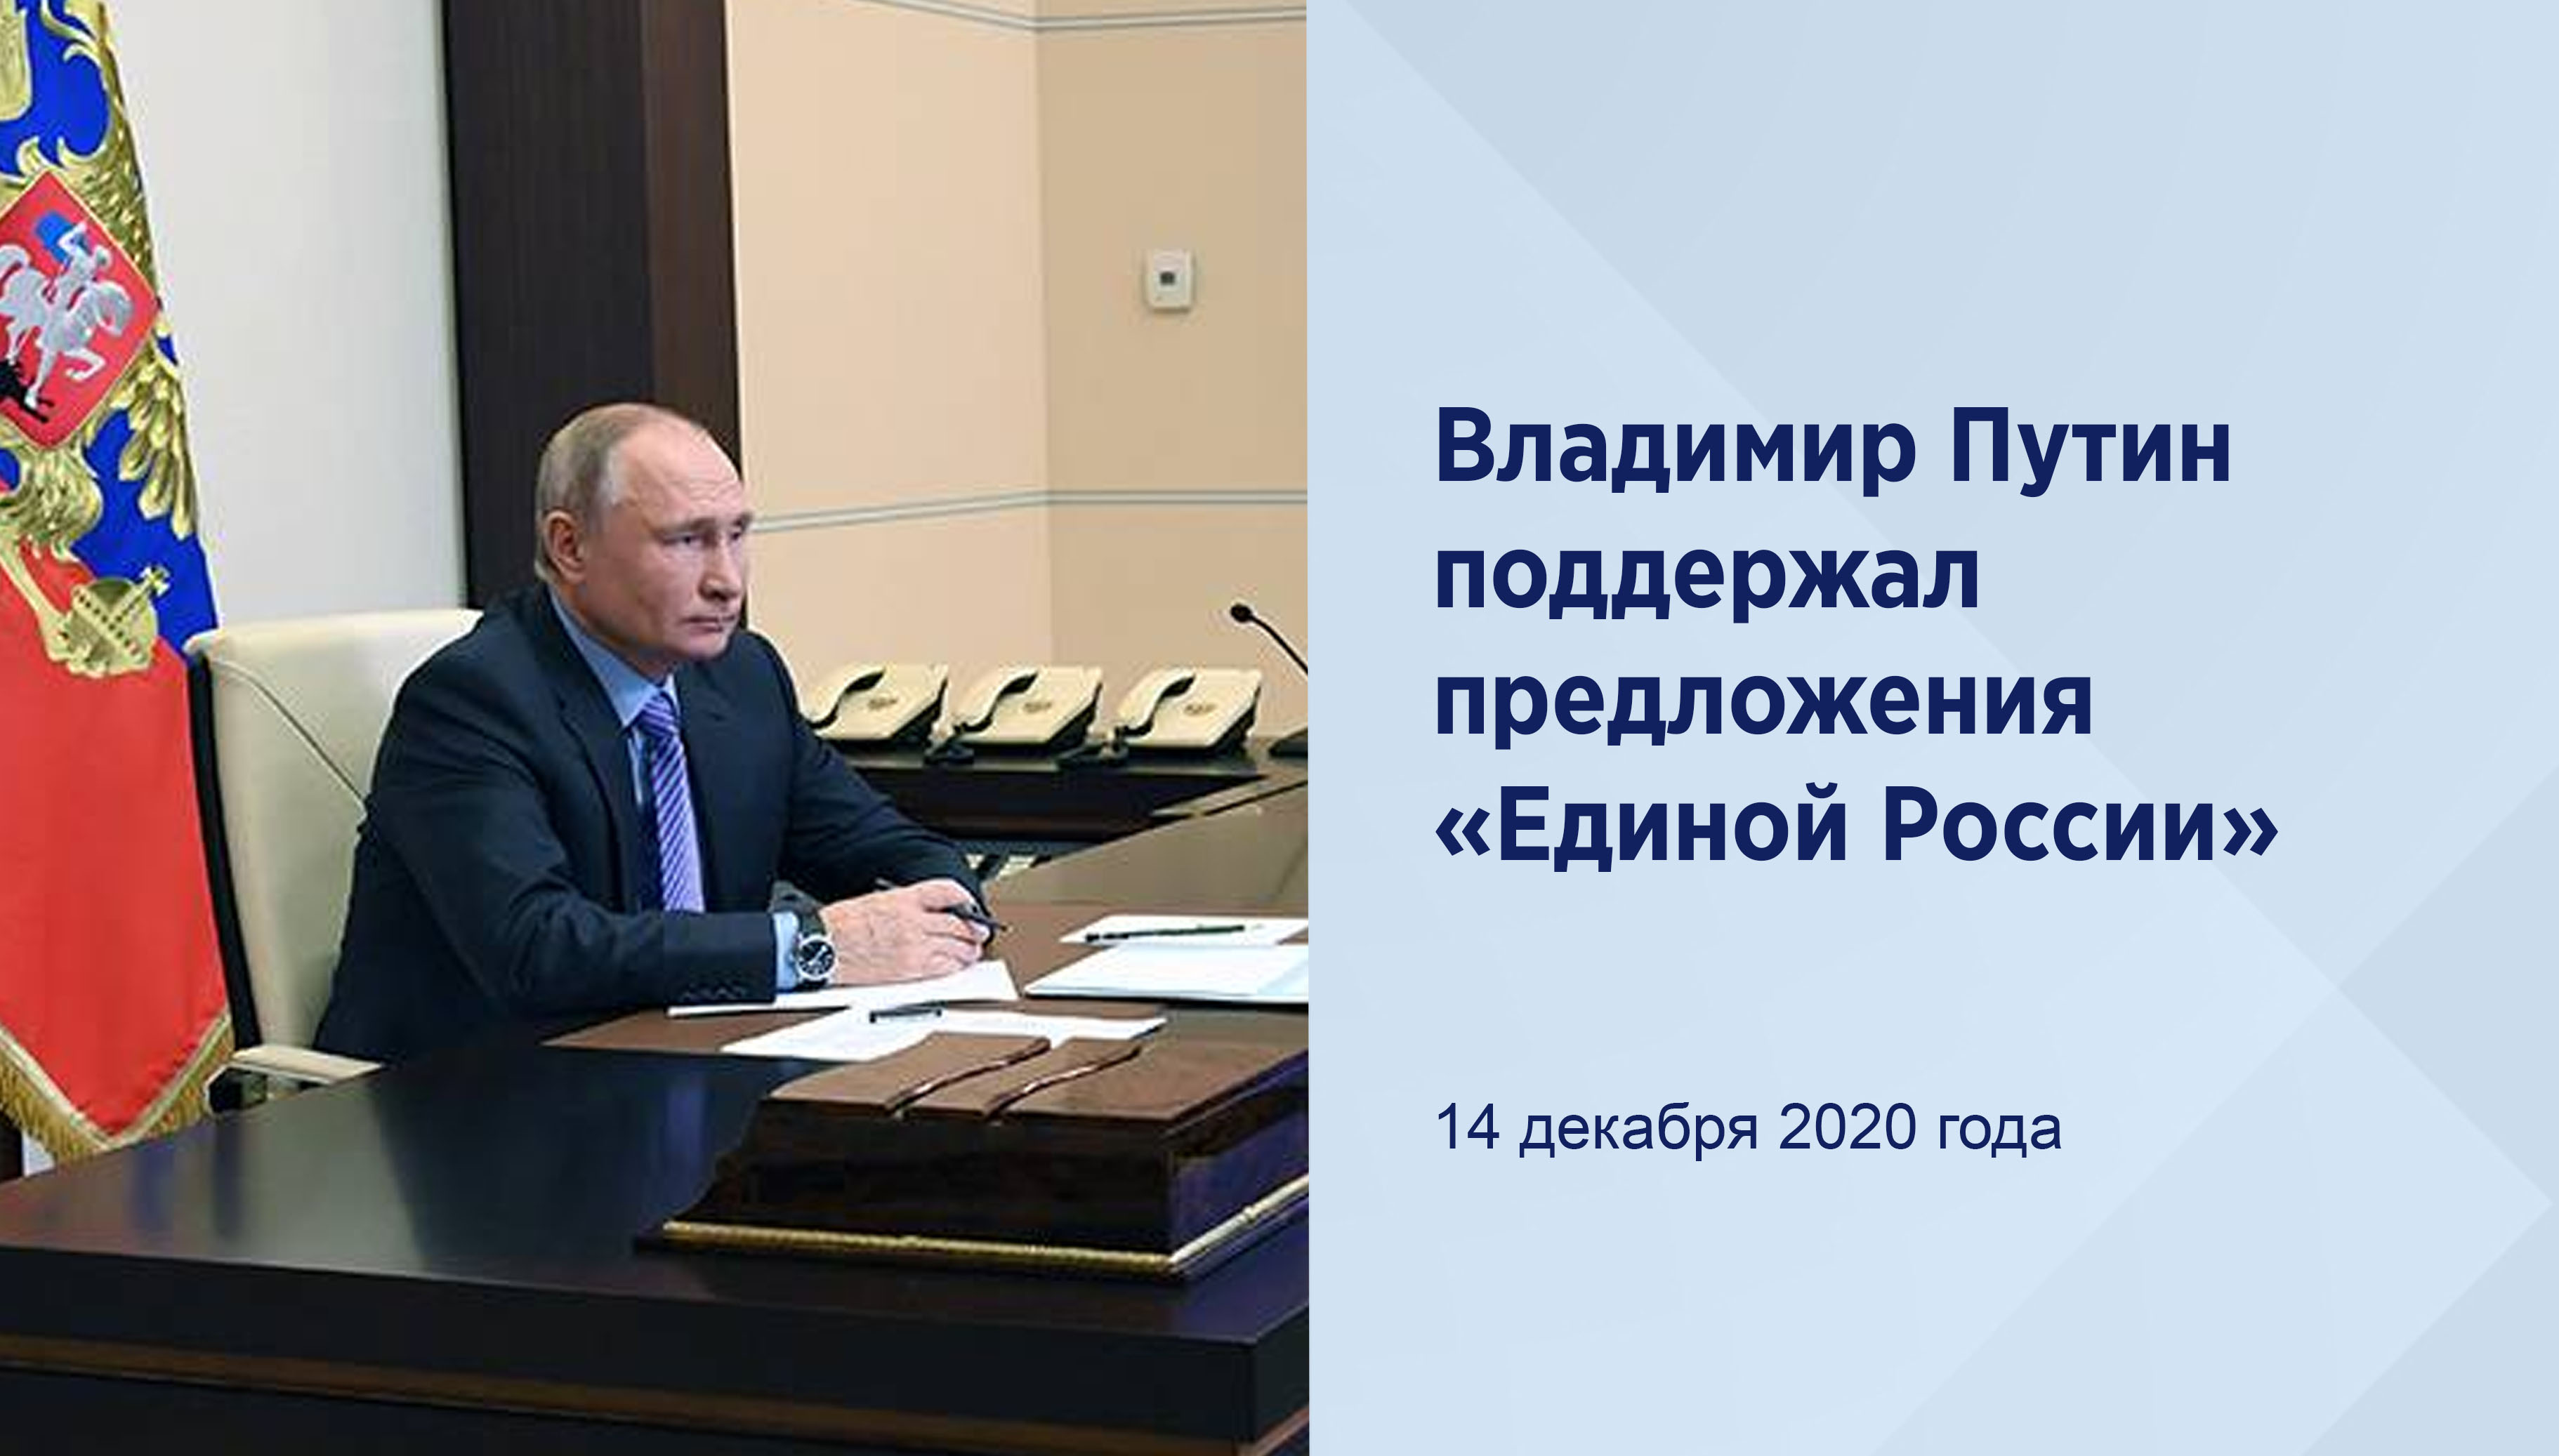 Владимир Путин поддержал
предложения «Единой России»